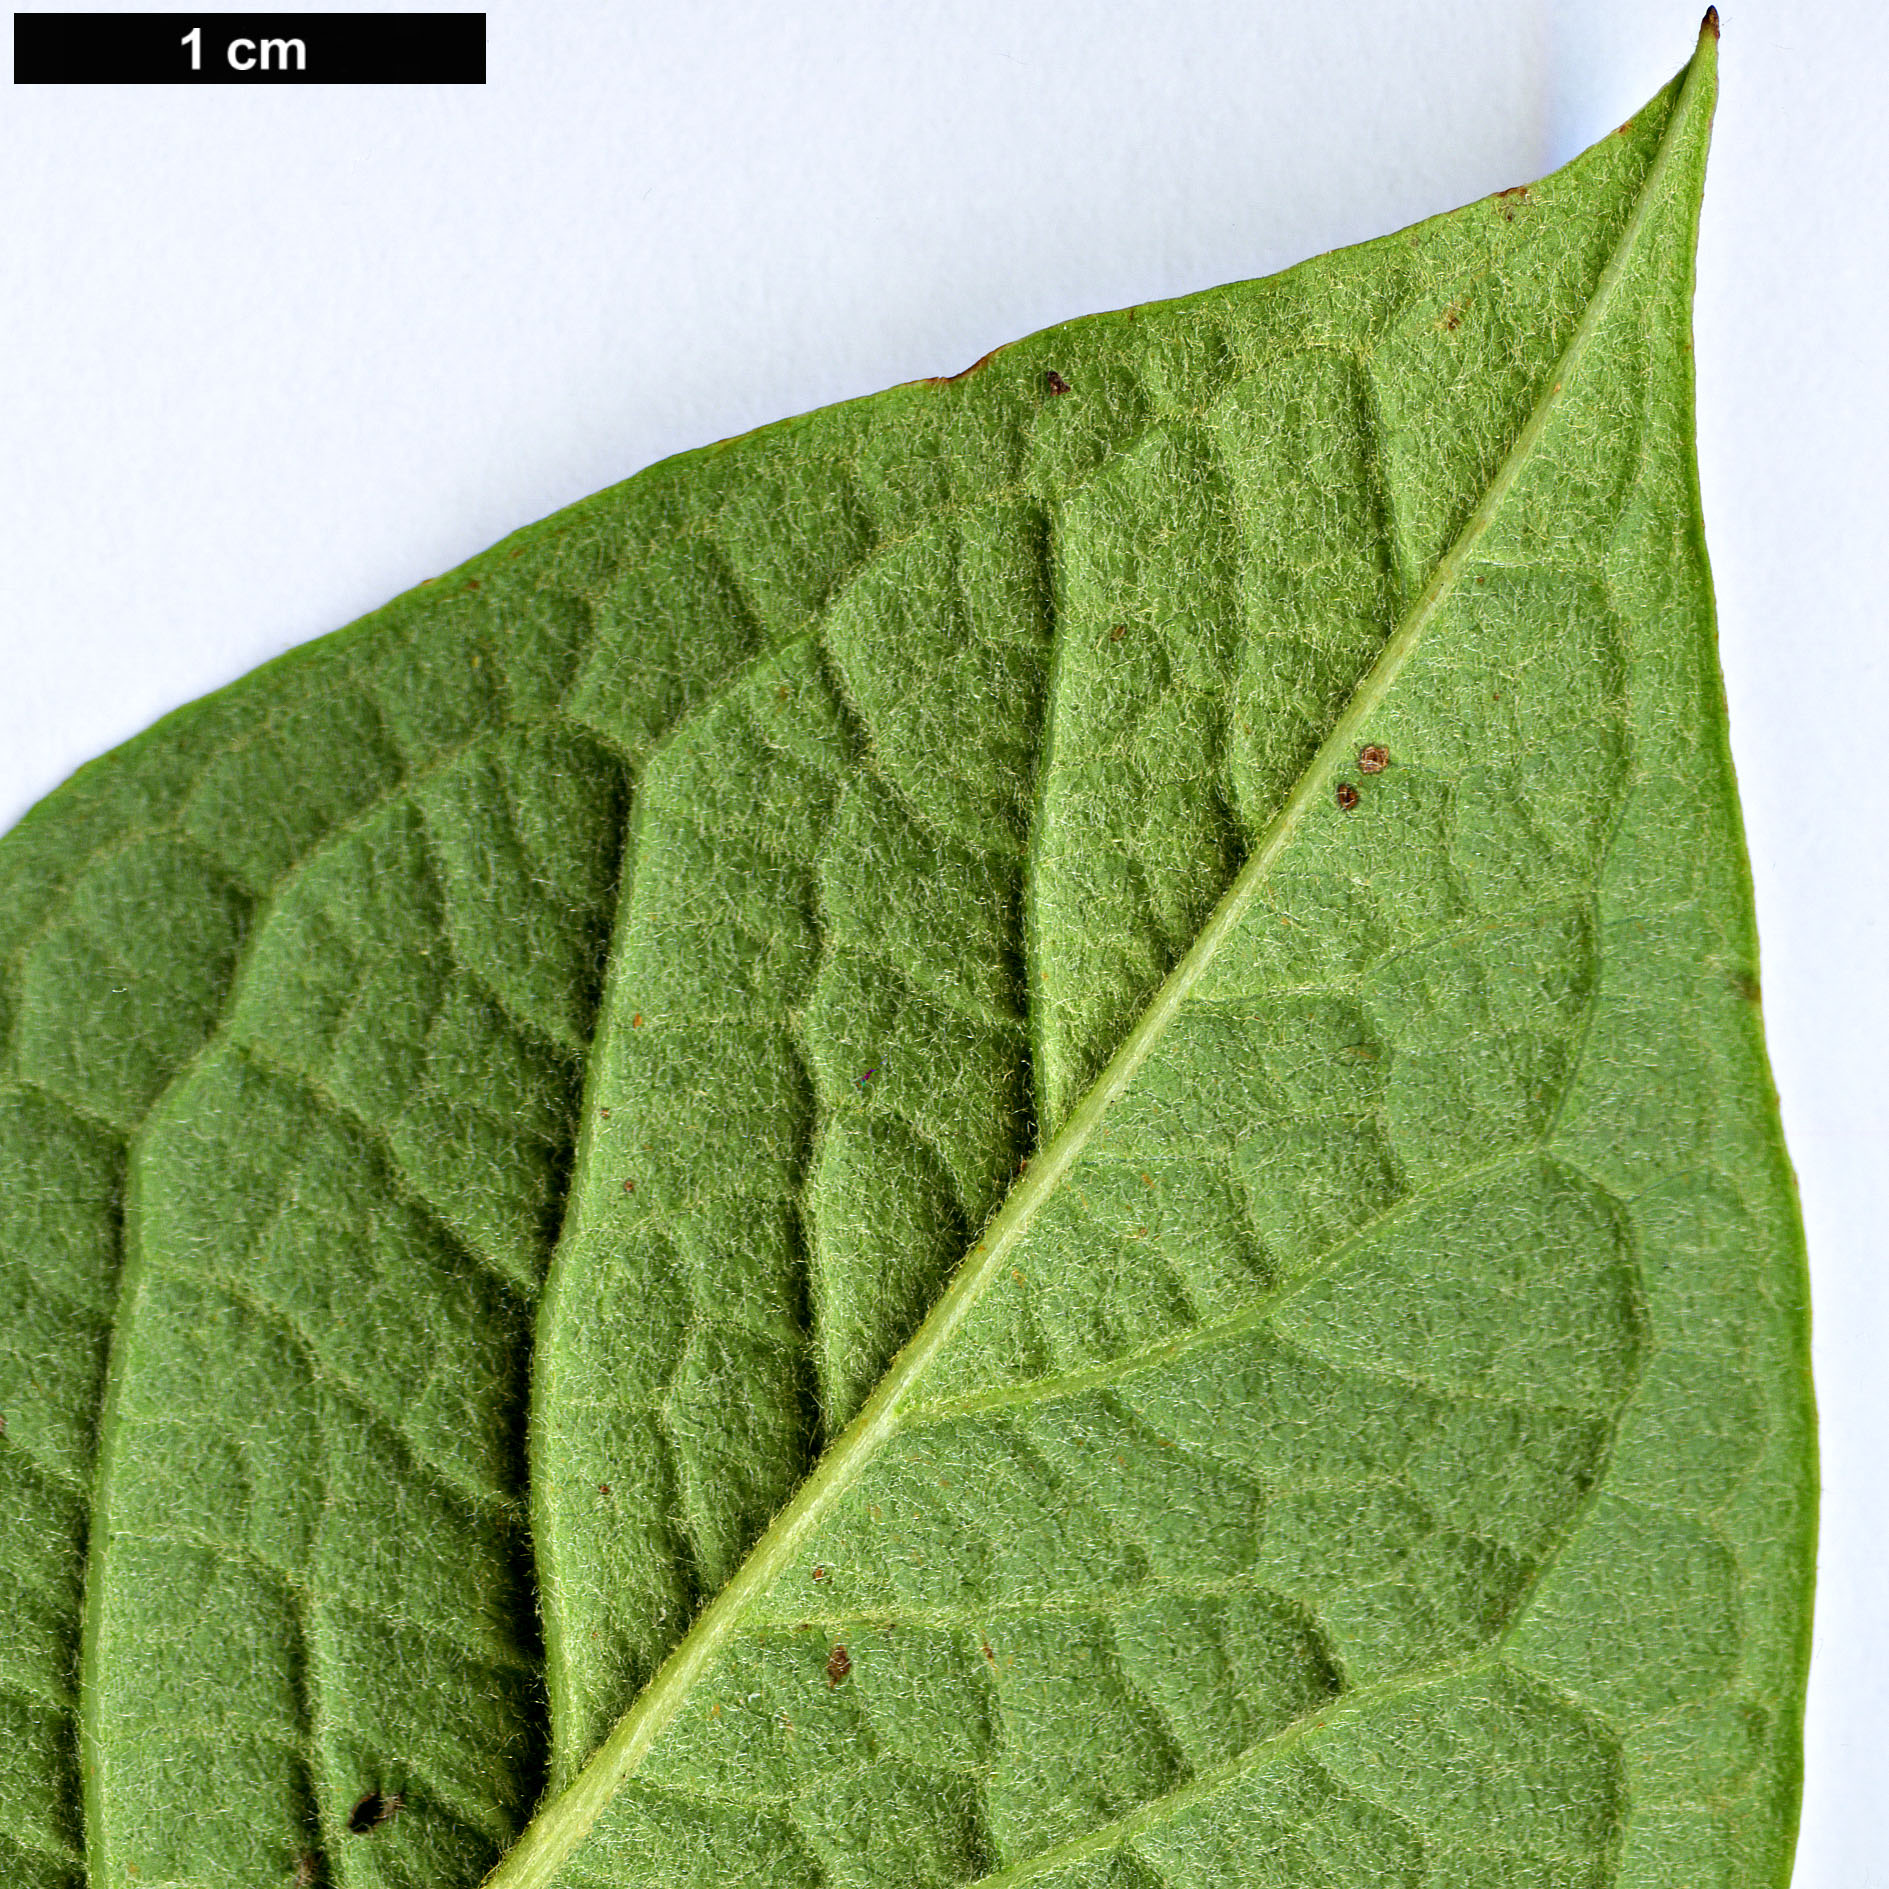 High resolution image: Family: Rosaceae - Genus: Cotoneaster - Taxon: cornifolius